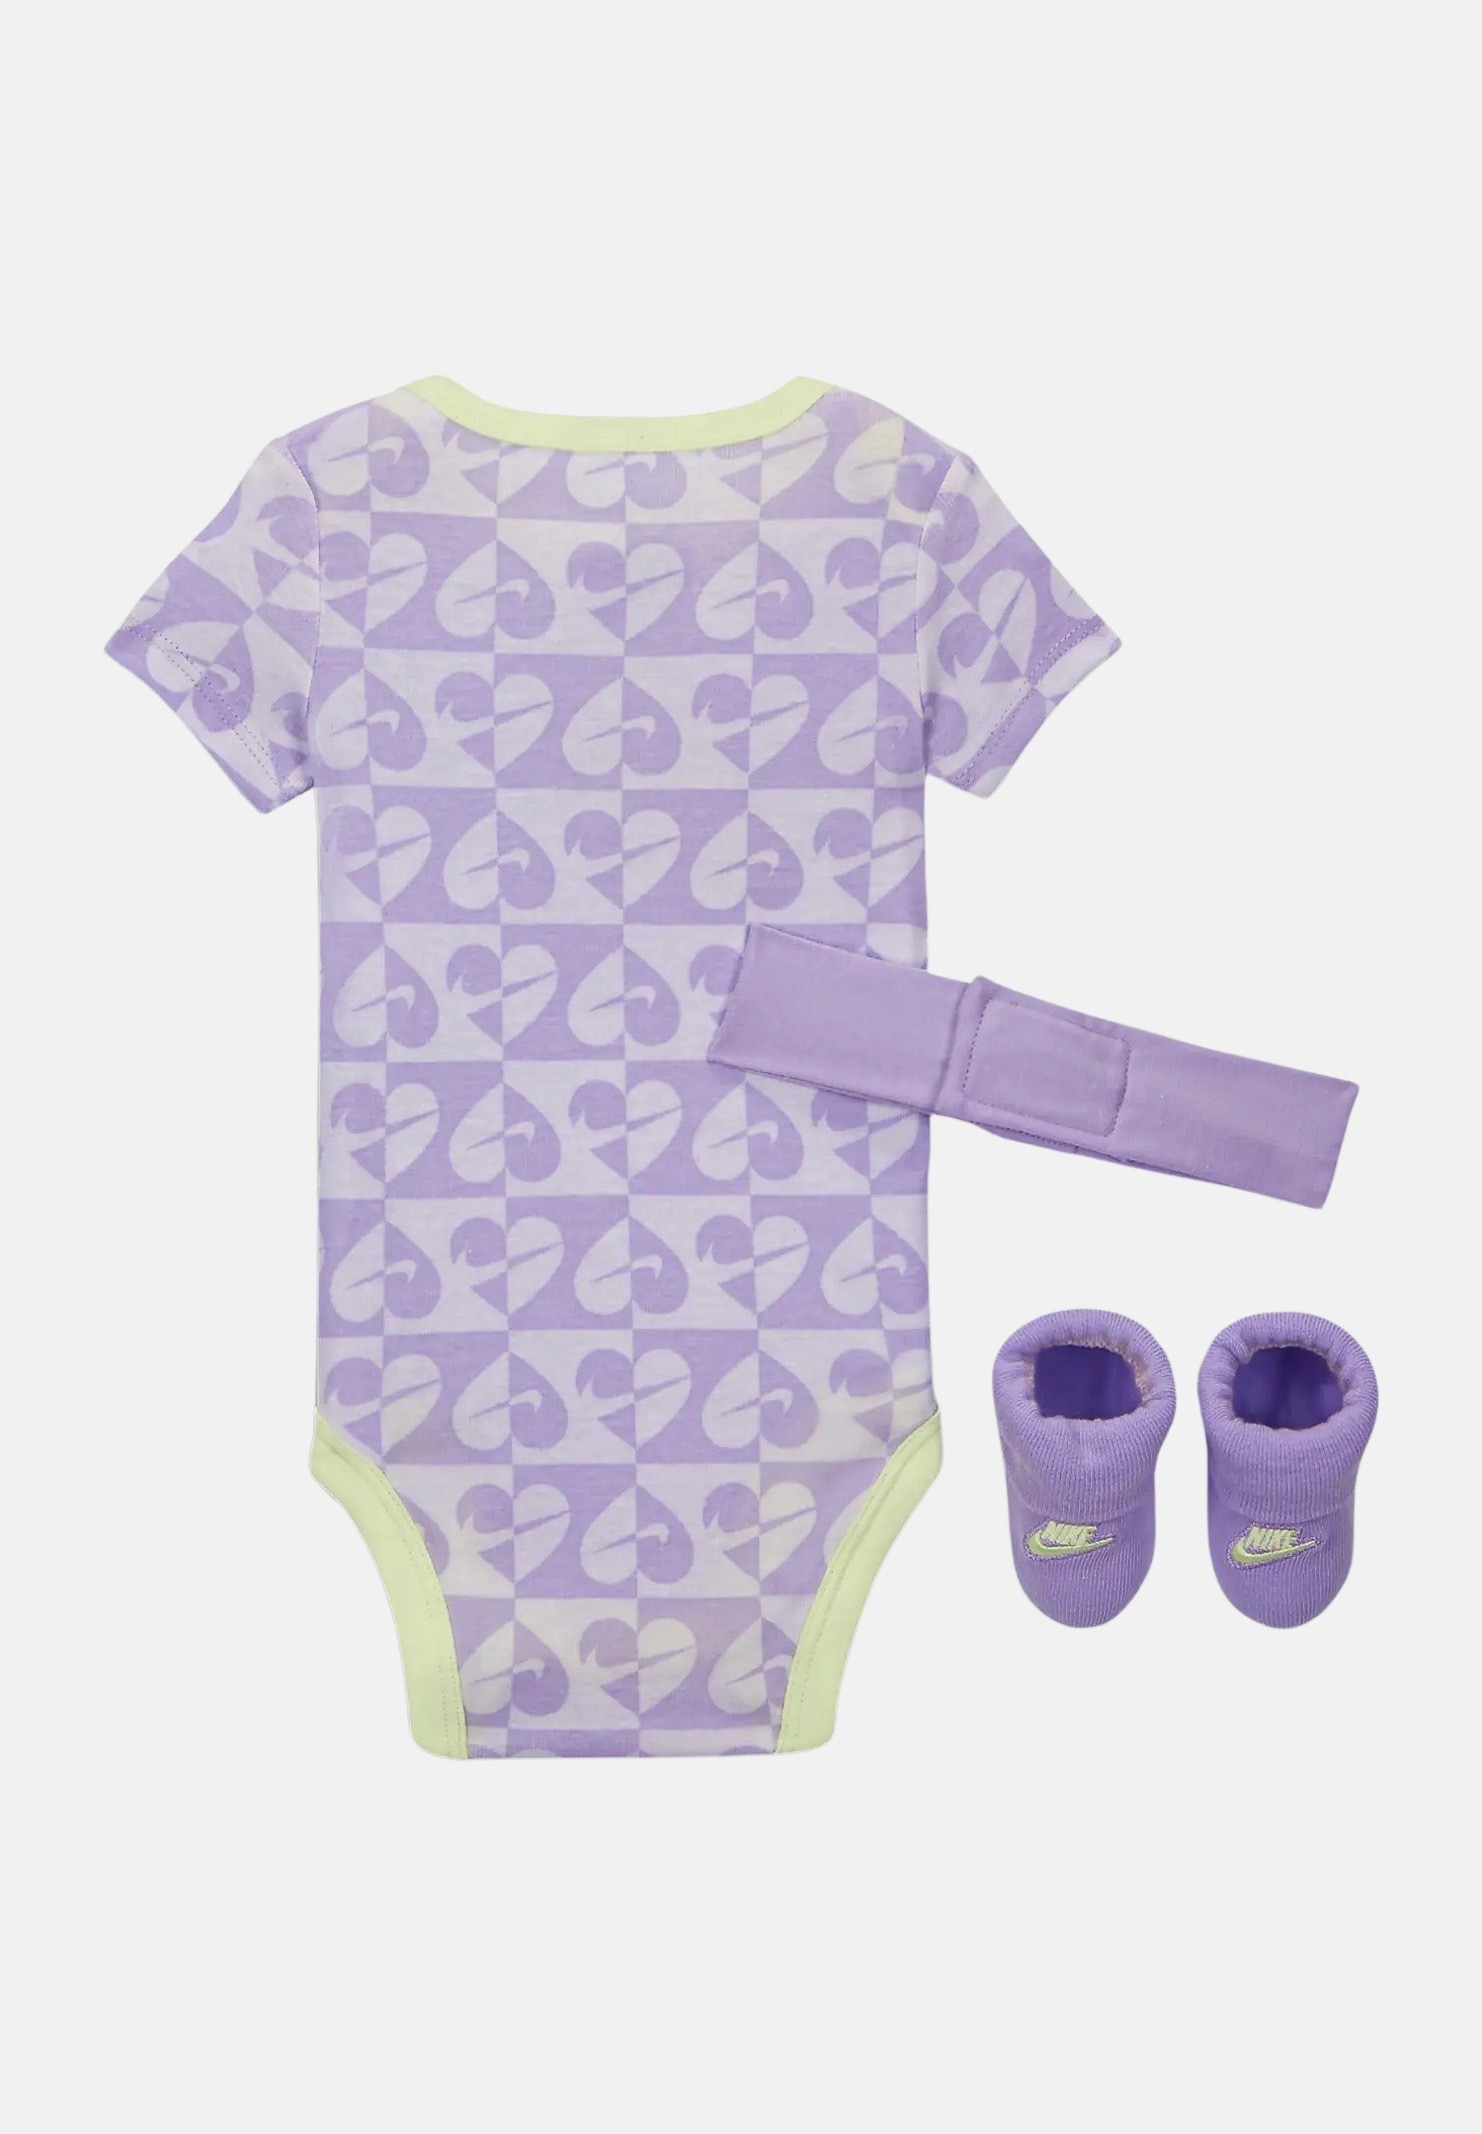 Completino neonato viola e verde, composto da fascia body e calzini NIKE | NN1042PAK